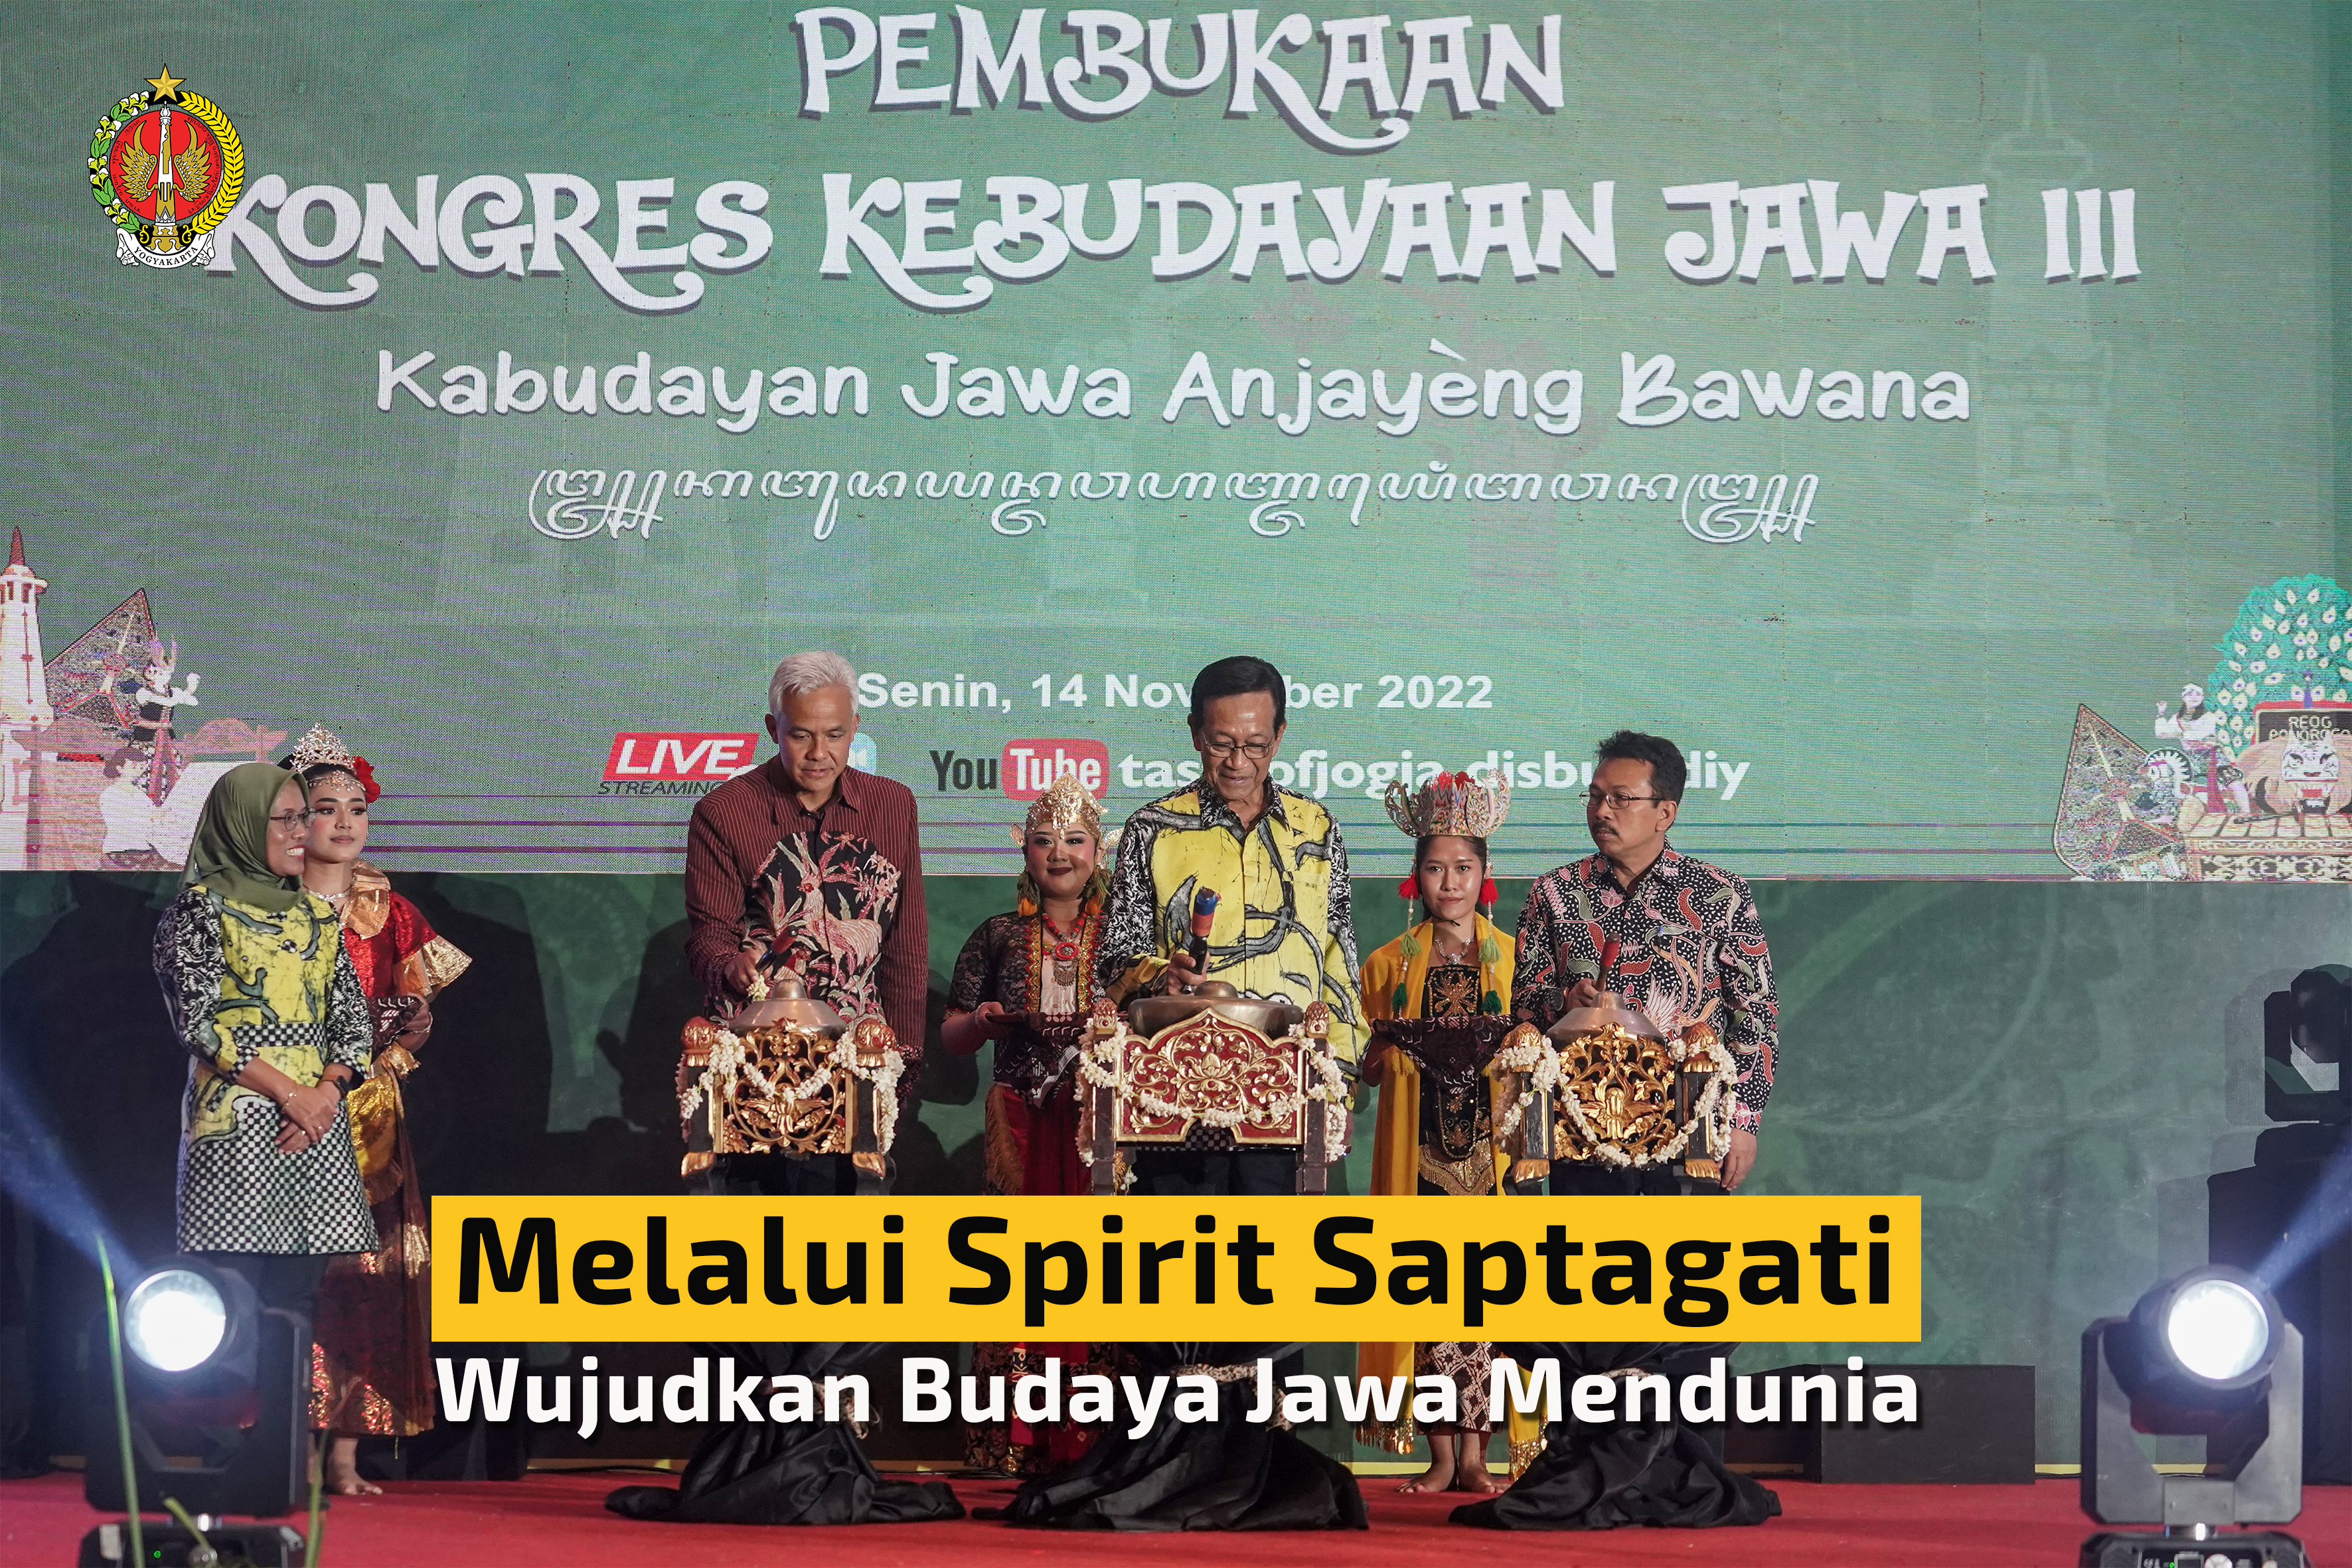  Melalui Spirit Saptagati, Wujudkan Budaya Jawa Mendunia